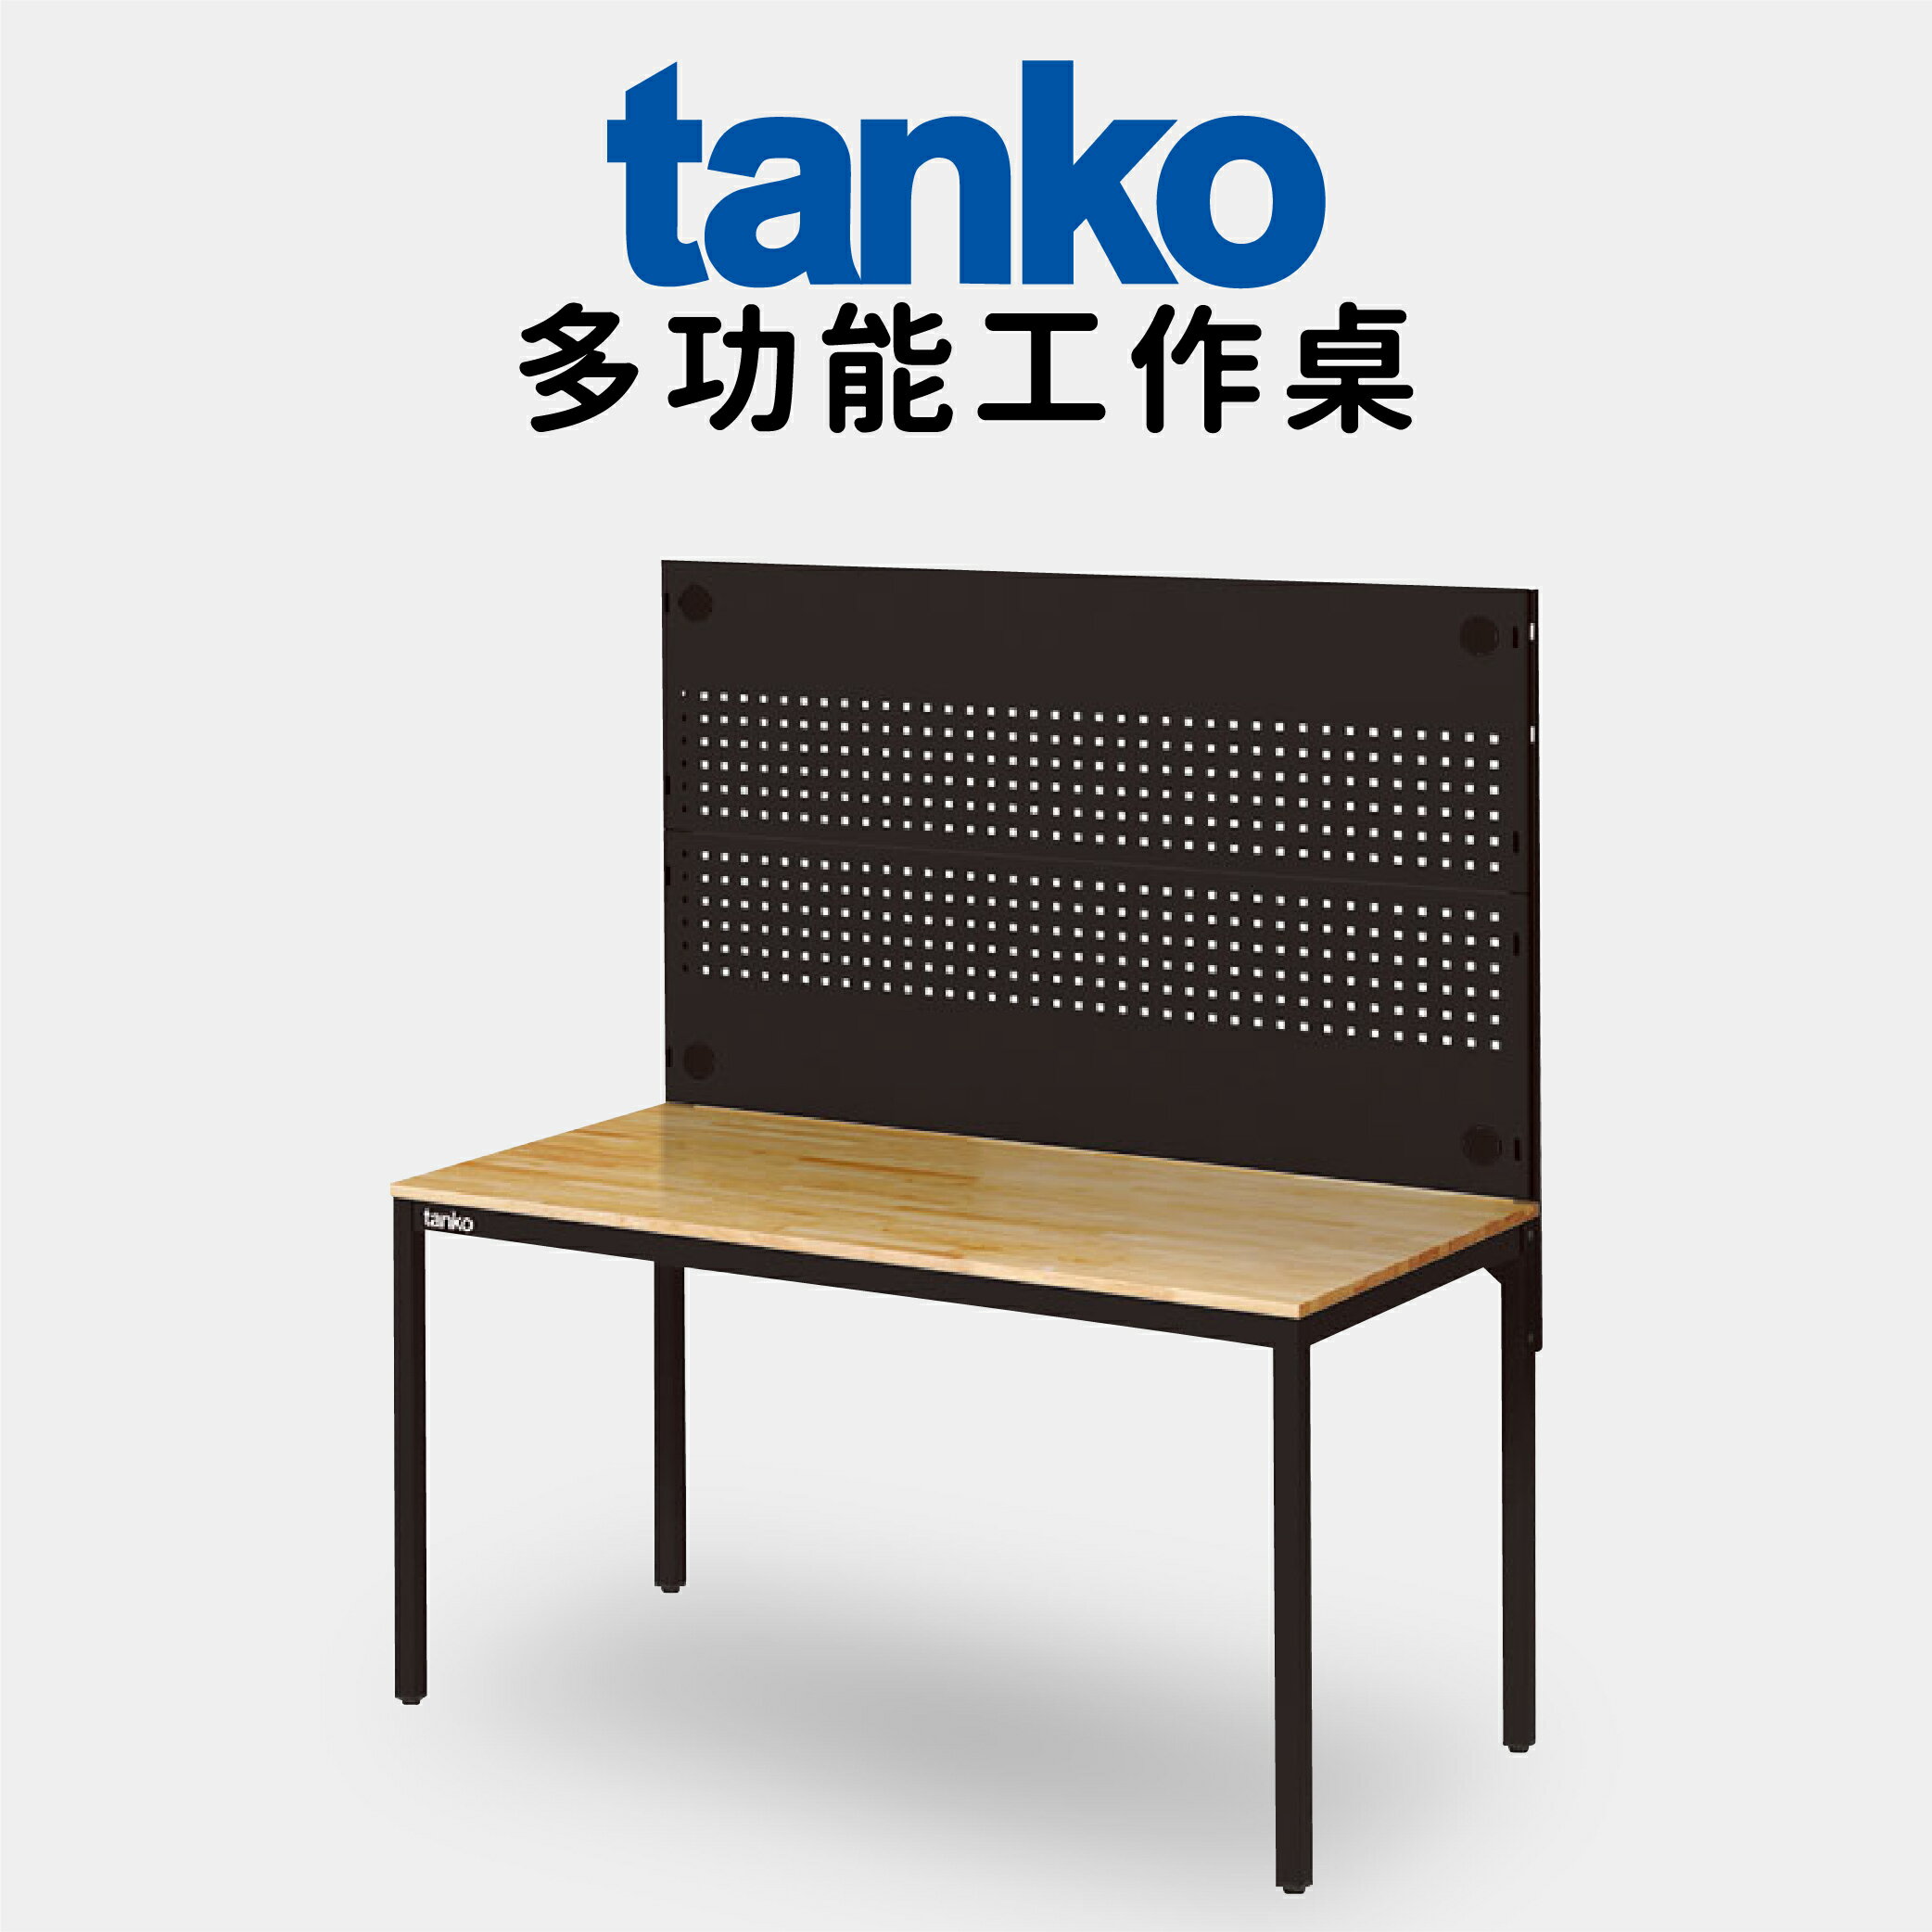 【天鋼 tanko】多功能工作桌 【WE-58W3】電腦桌 書桌 多用途桌 工廠專用